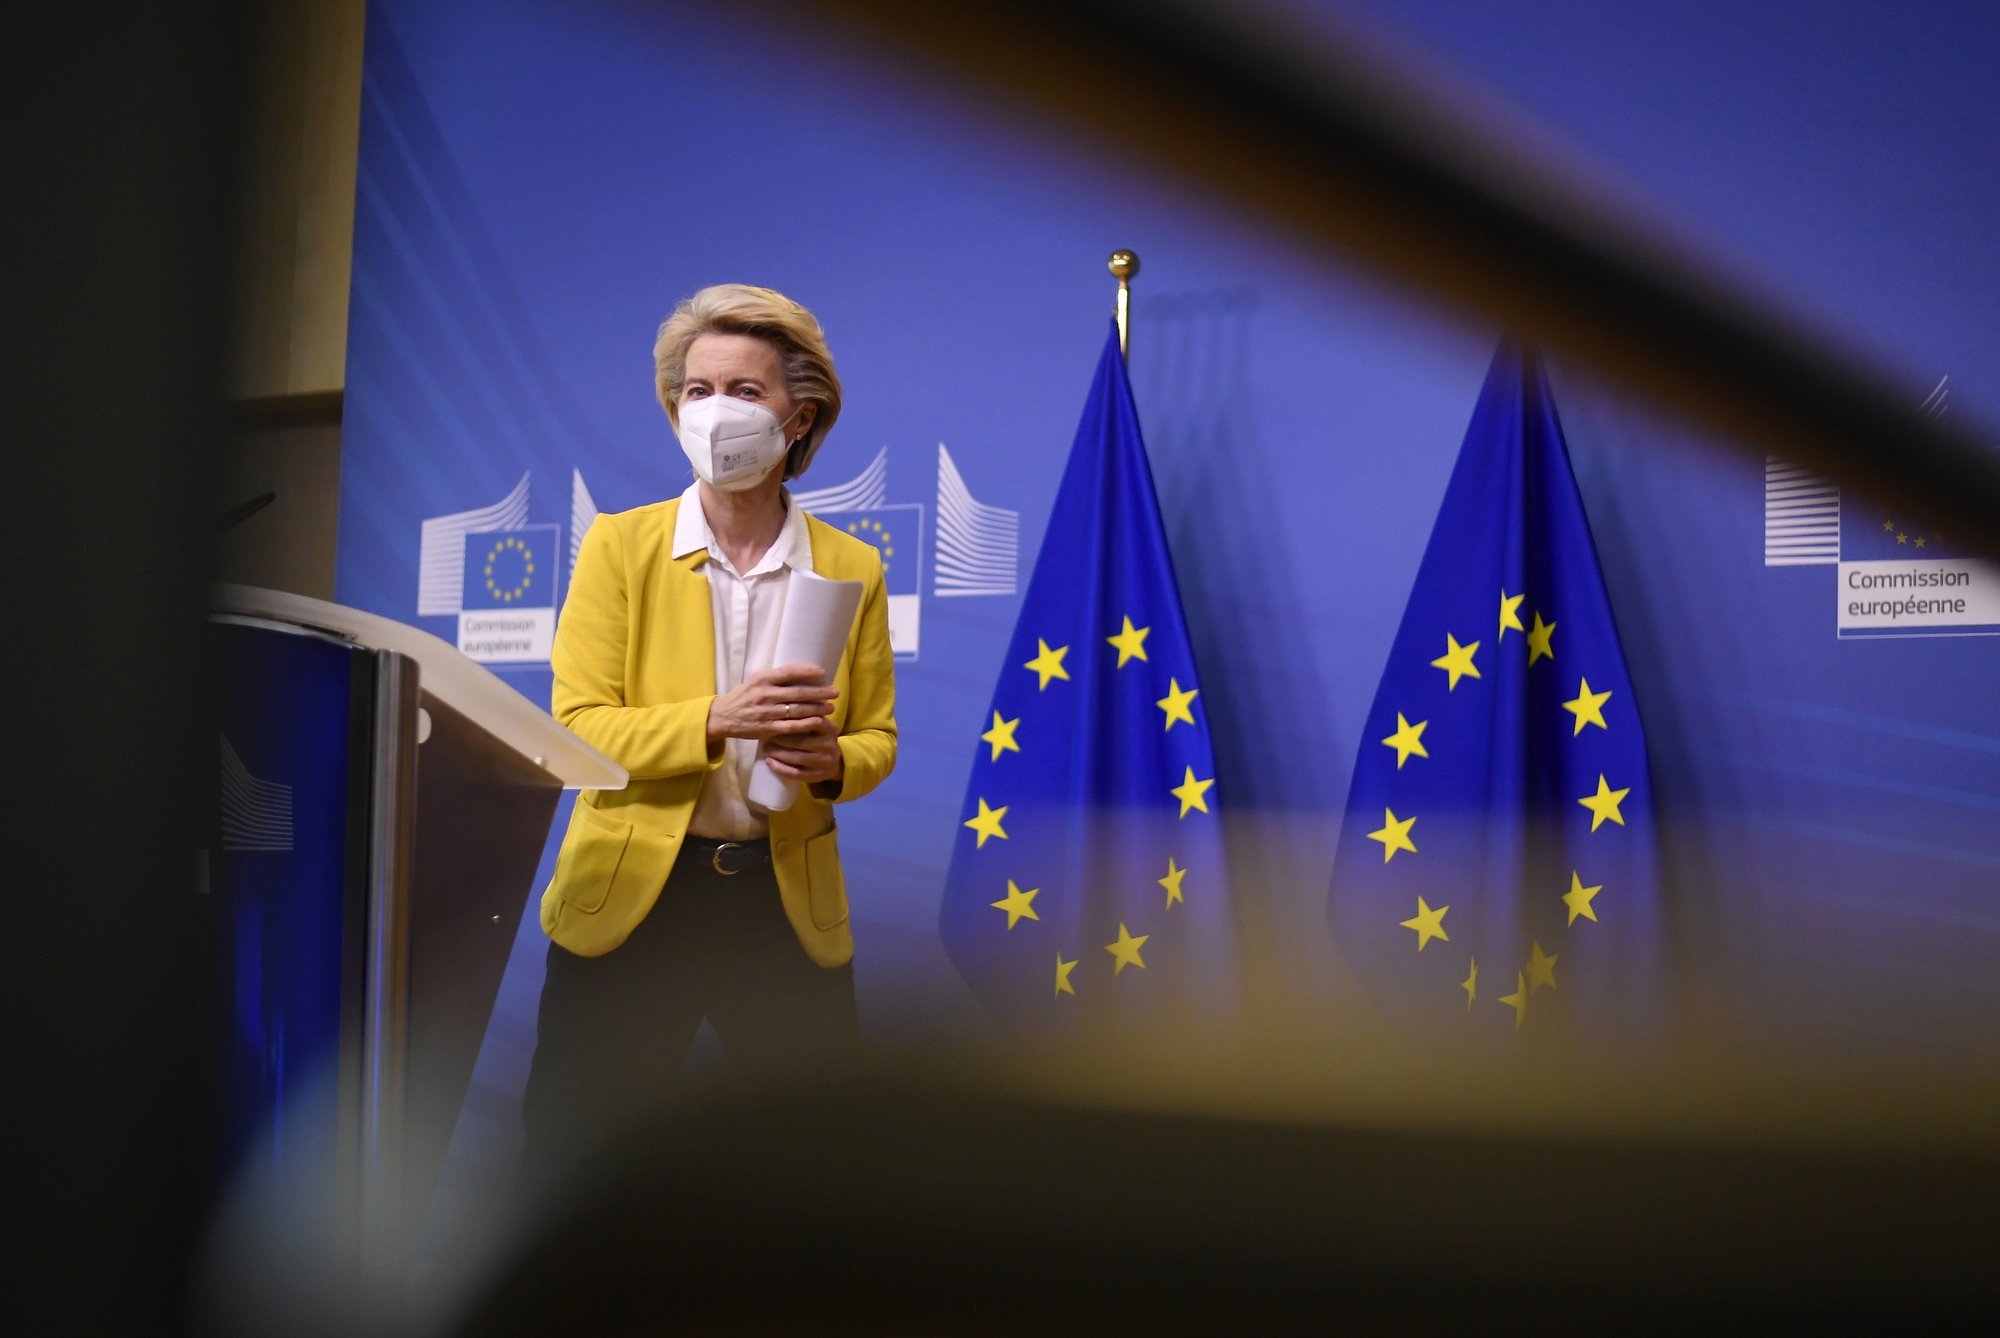 Le 23 avril, la présidente de la Commission européenne Ursula von der Leyen recevra le président de la Confédération Guy Parmelin à Bruxelles pour discuter de l'Accord-cadre.